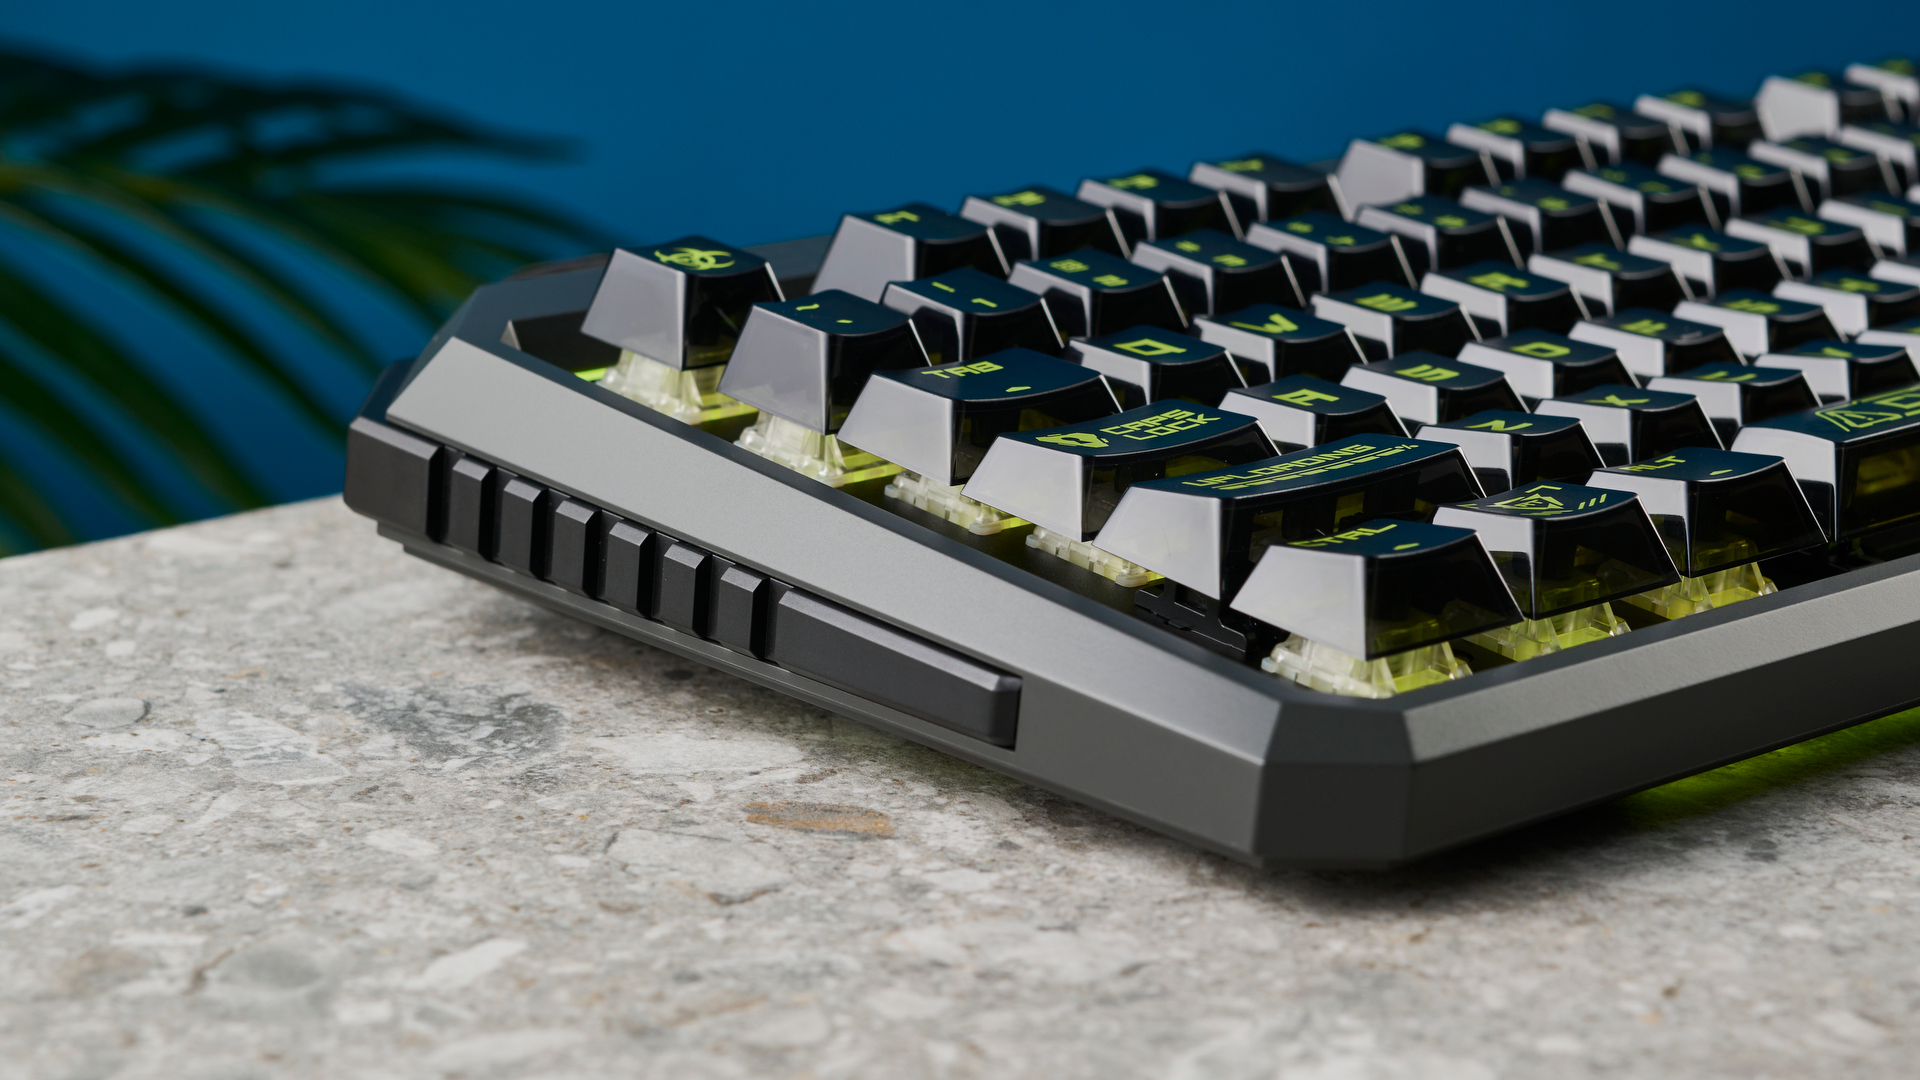 A MelGeek CYBER01 magnetic switch keyboard